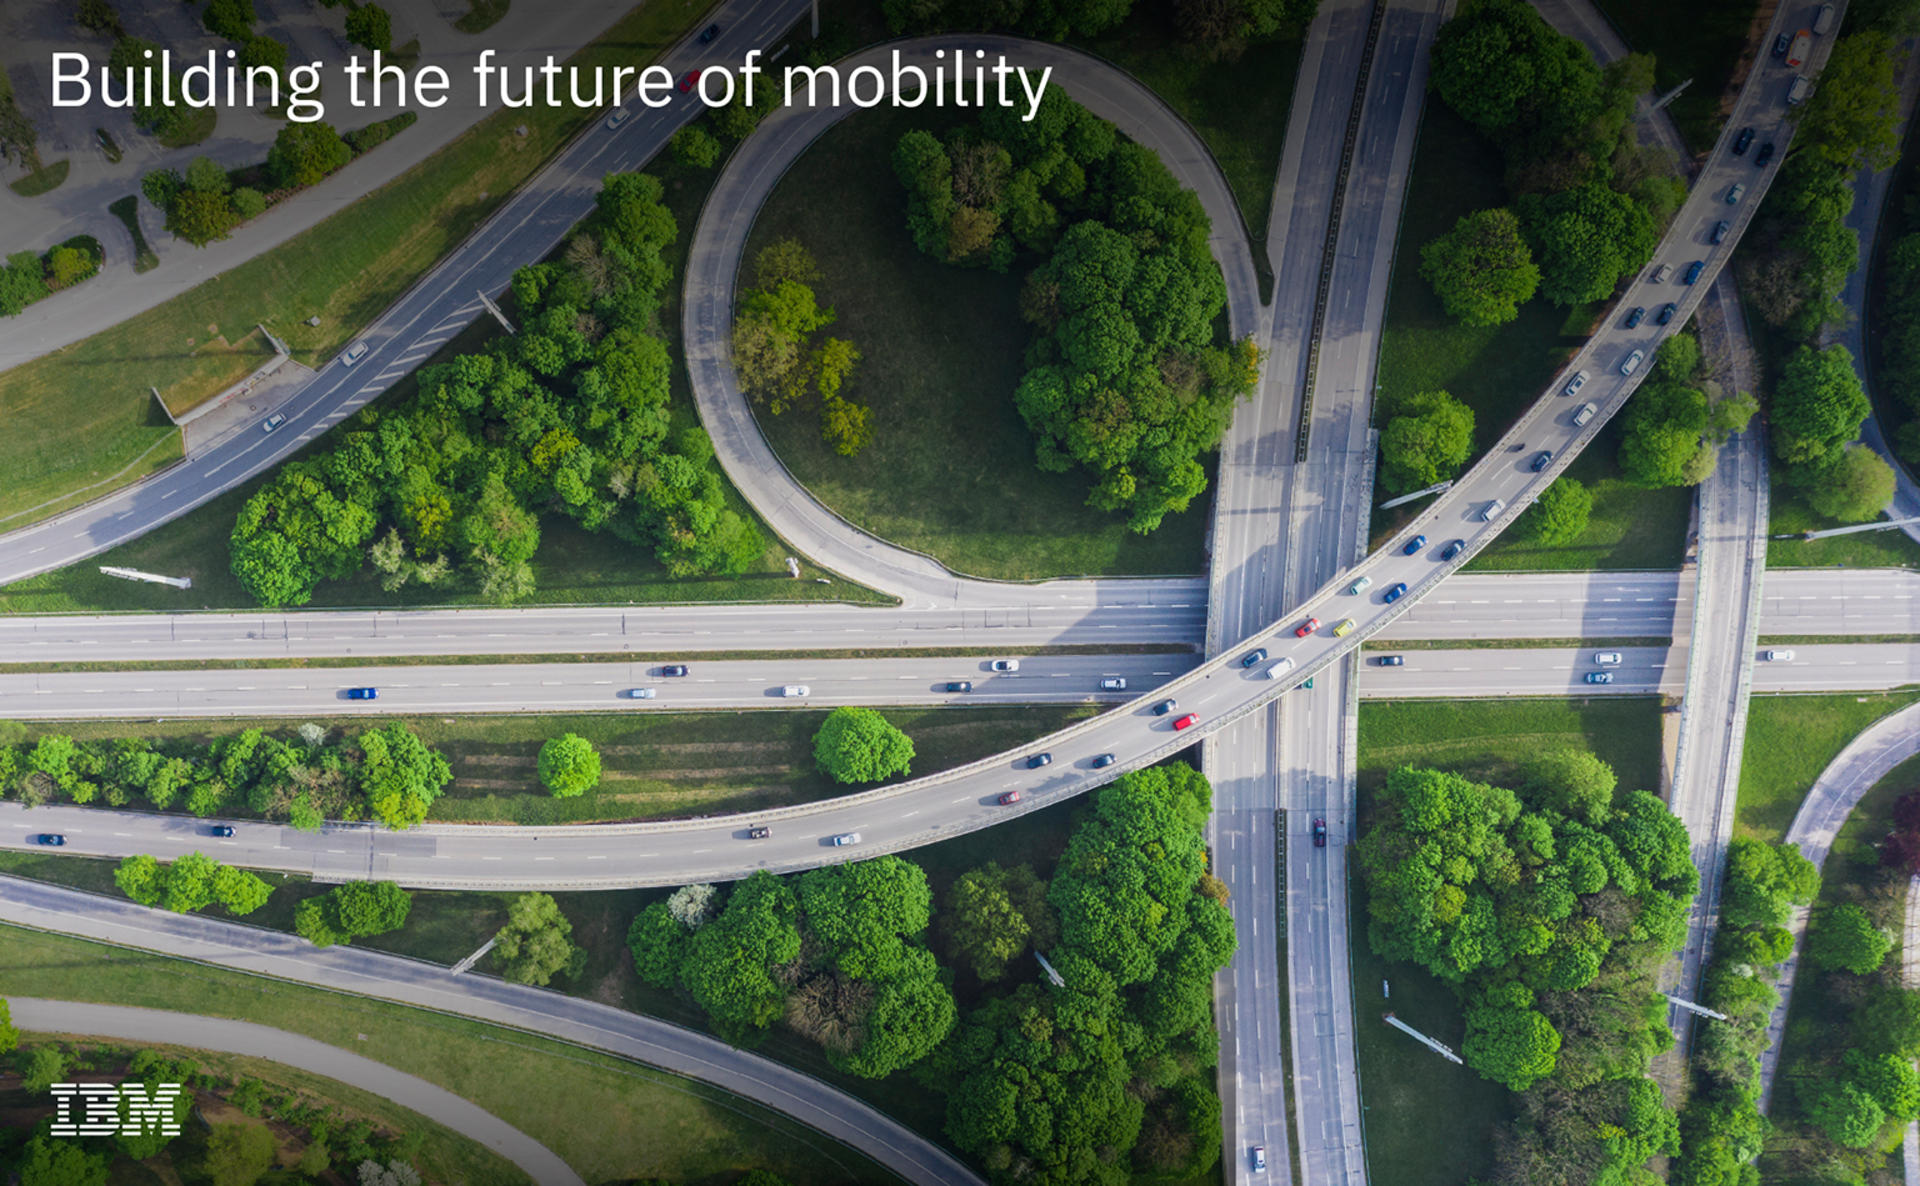 Die Zukunft der Mobilität gestalten